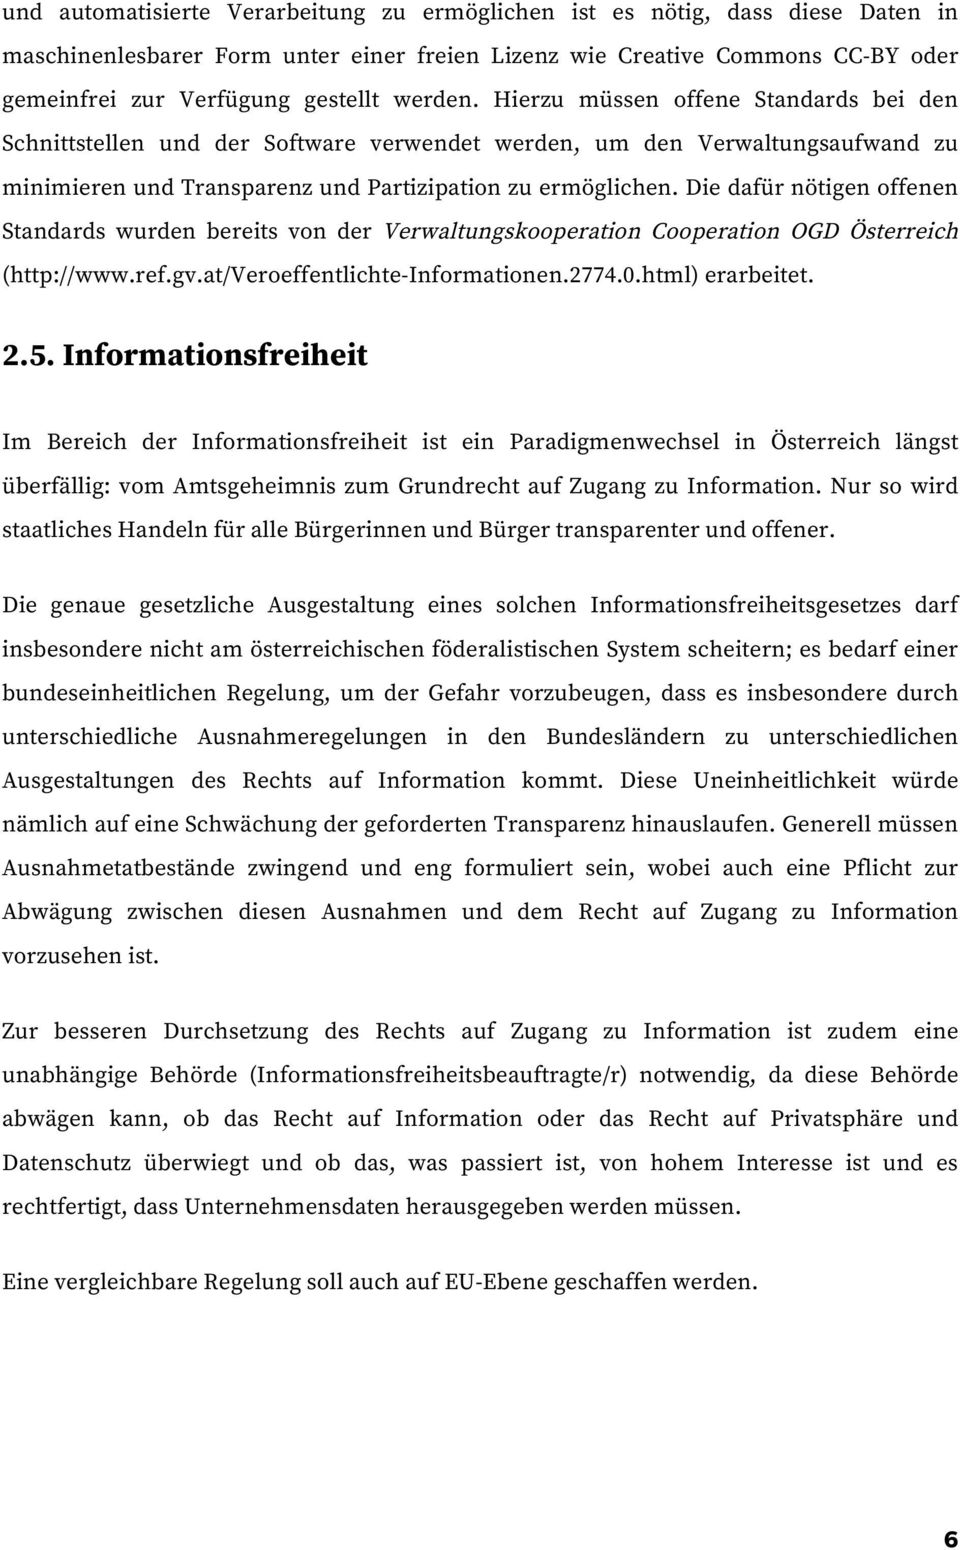 Die dafür nötigen offenen Standards wurden bereits von der Verwaltungskooperation Cooperation OGD Österreich (http://www.ref.gv.at/veroeffentlichte-informationen.2774.0.html) erarbeitet. 2.5.